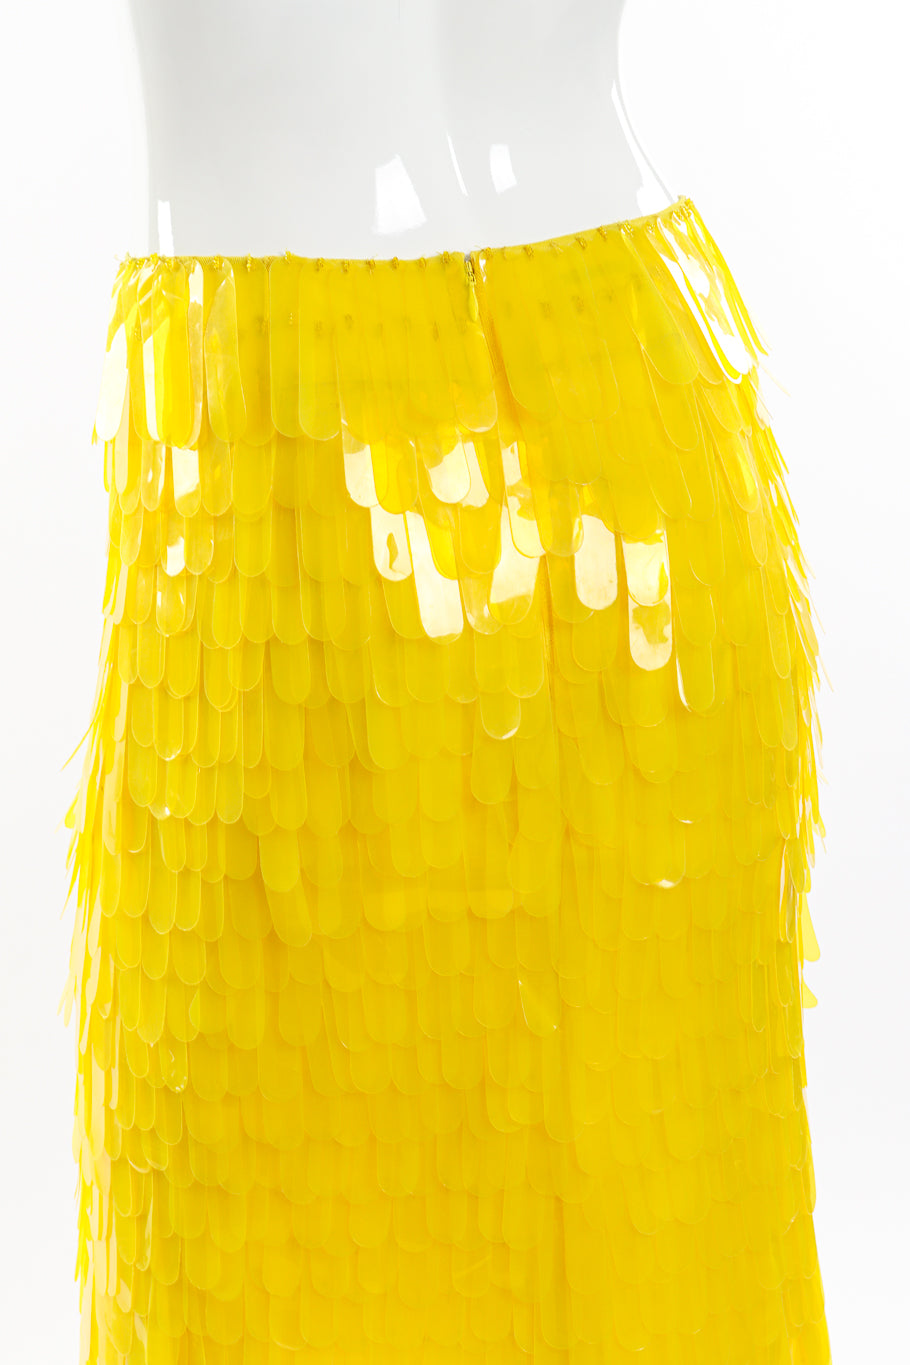 Dries Van Noten 2019 S/S Paillette Midi Skirt back on mannequin closeup @recess la